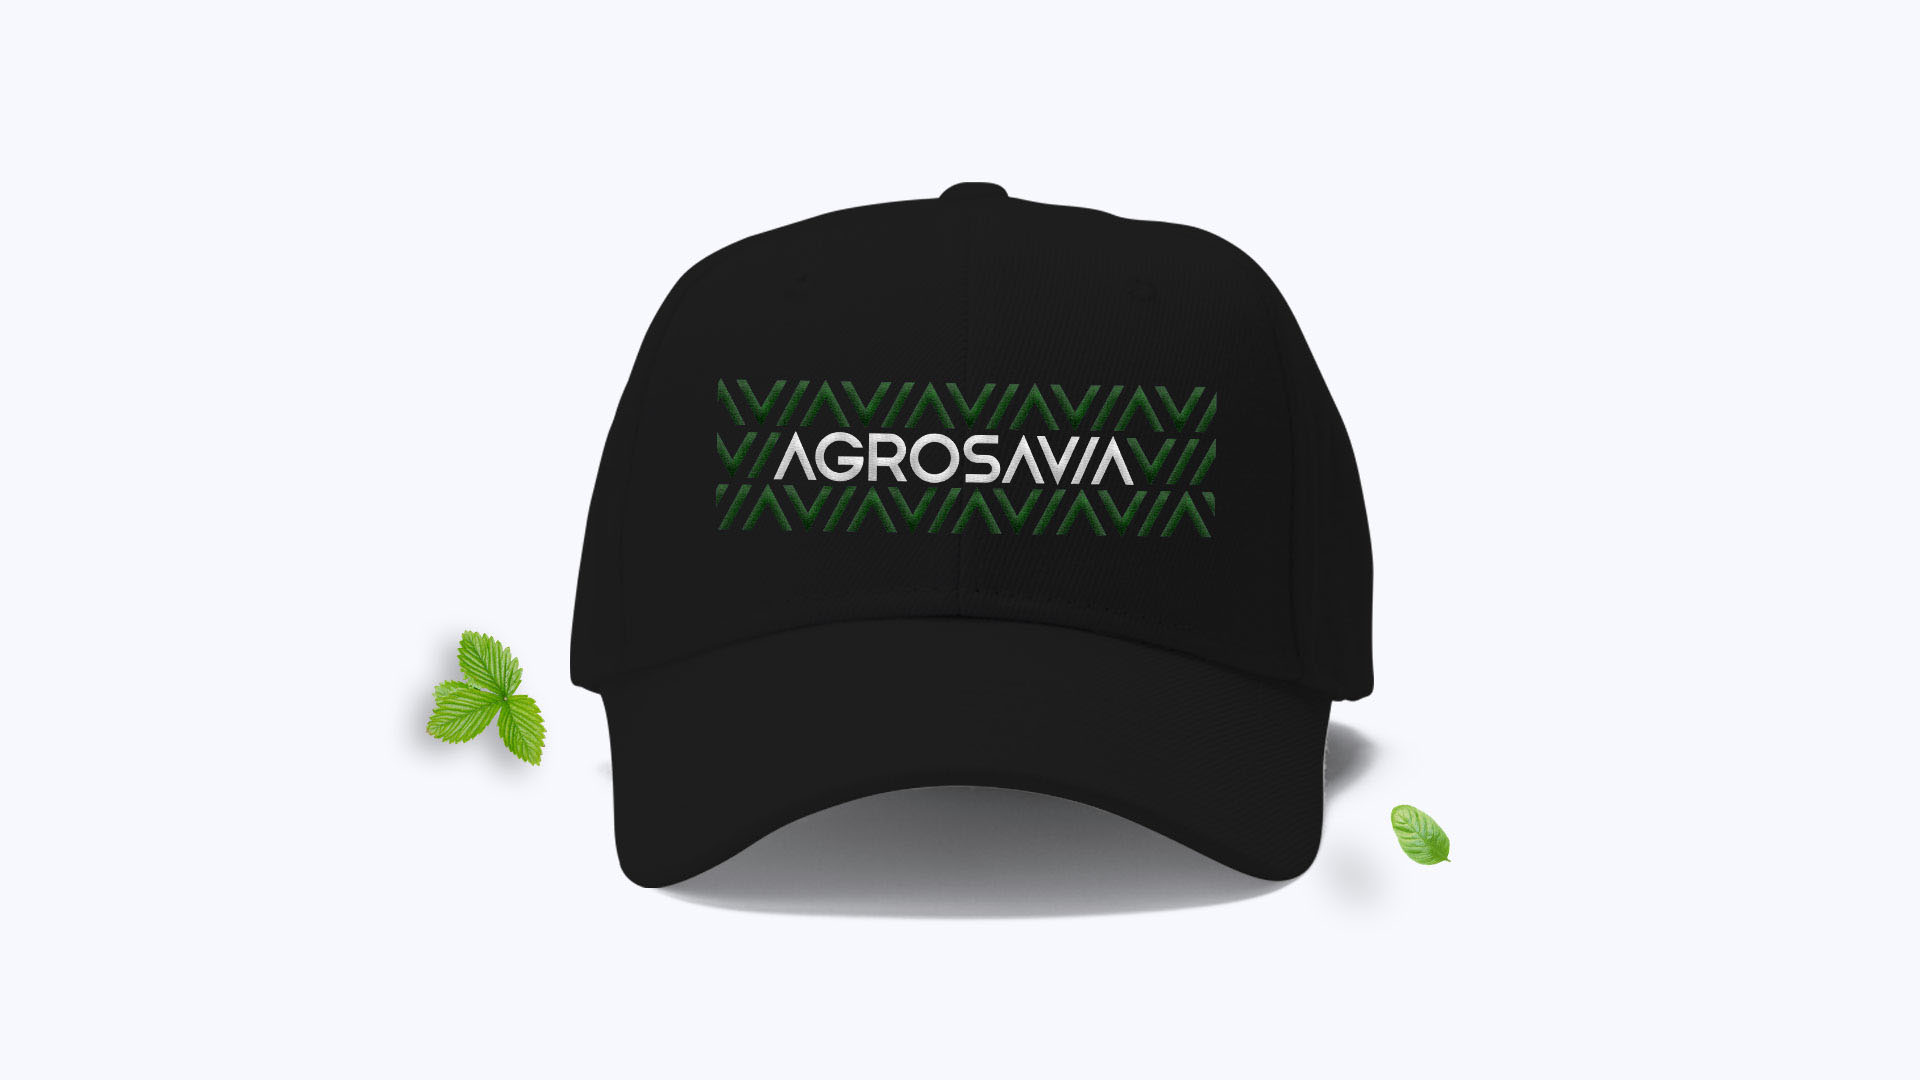 comunicación y diseño corporativo de la marca Agrosavia